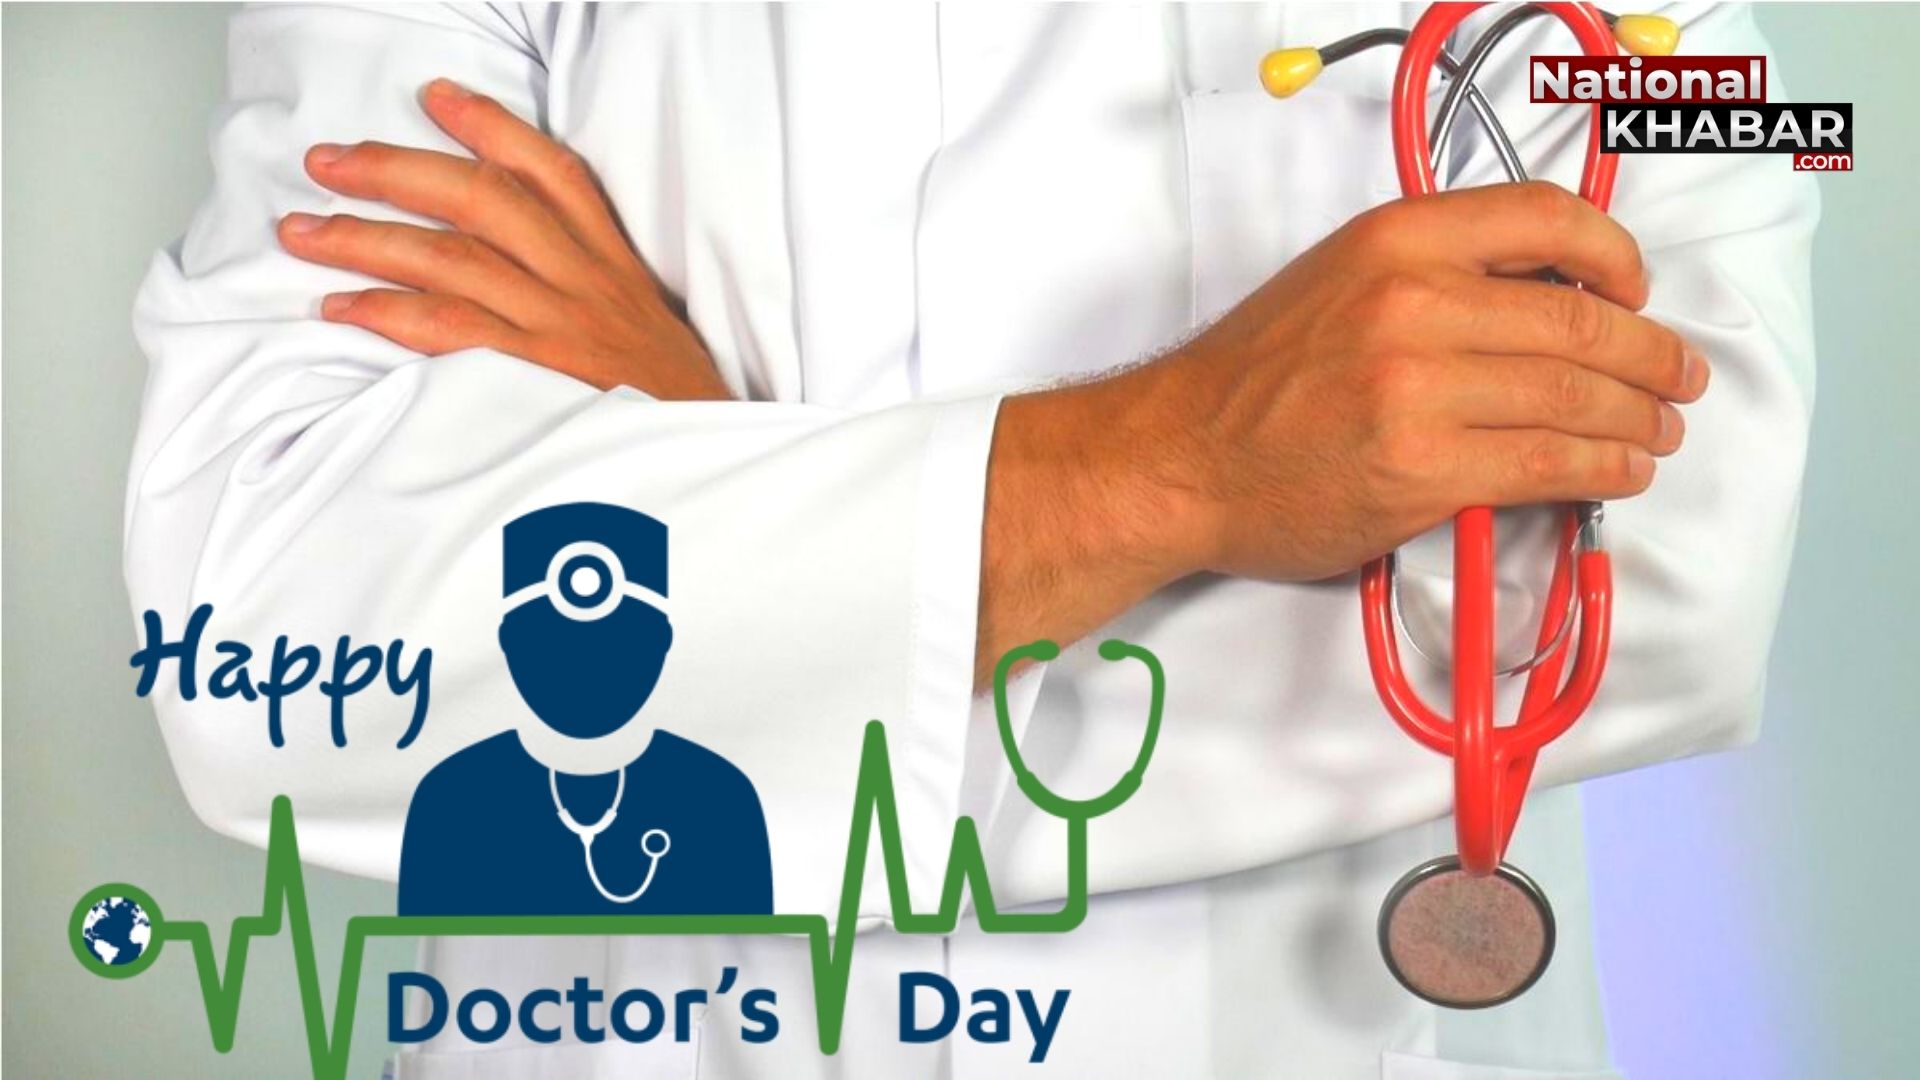 National Doctor's Day: डॉक्टर्स, धरती पर भगवान, जो देते हैं मरीज को जीवन, उनके समर्पण और मेहनत को दें सम्मान और प्रोत्साहन